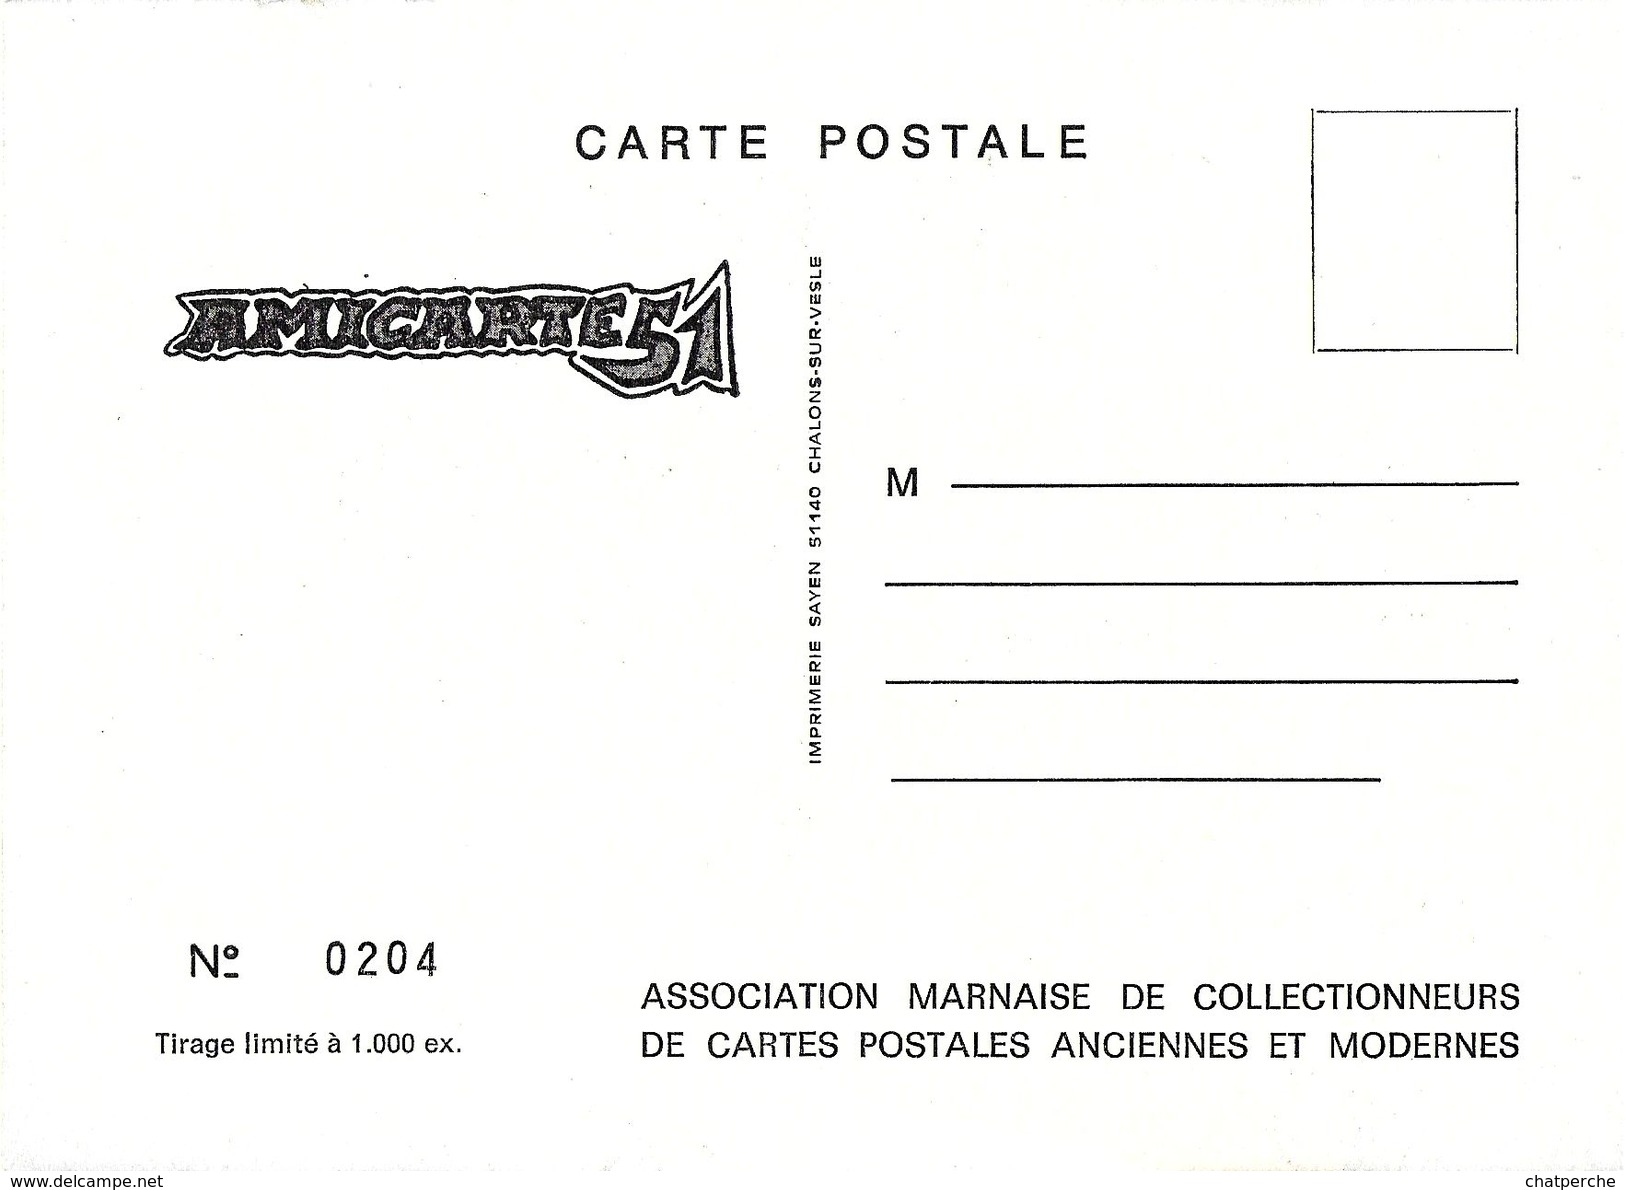 CARTE BOURSE SALON DE COLLECTIONS REIMS 1989 REVOLUTION FRANCAISE ILLUSTRATEUR M.C. HENRY - Bourses & Salons De Collections